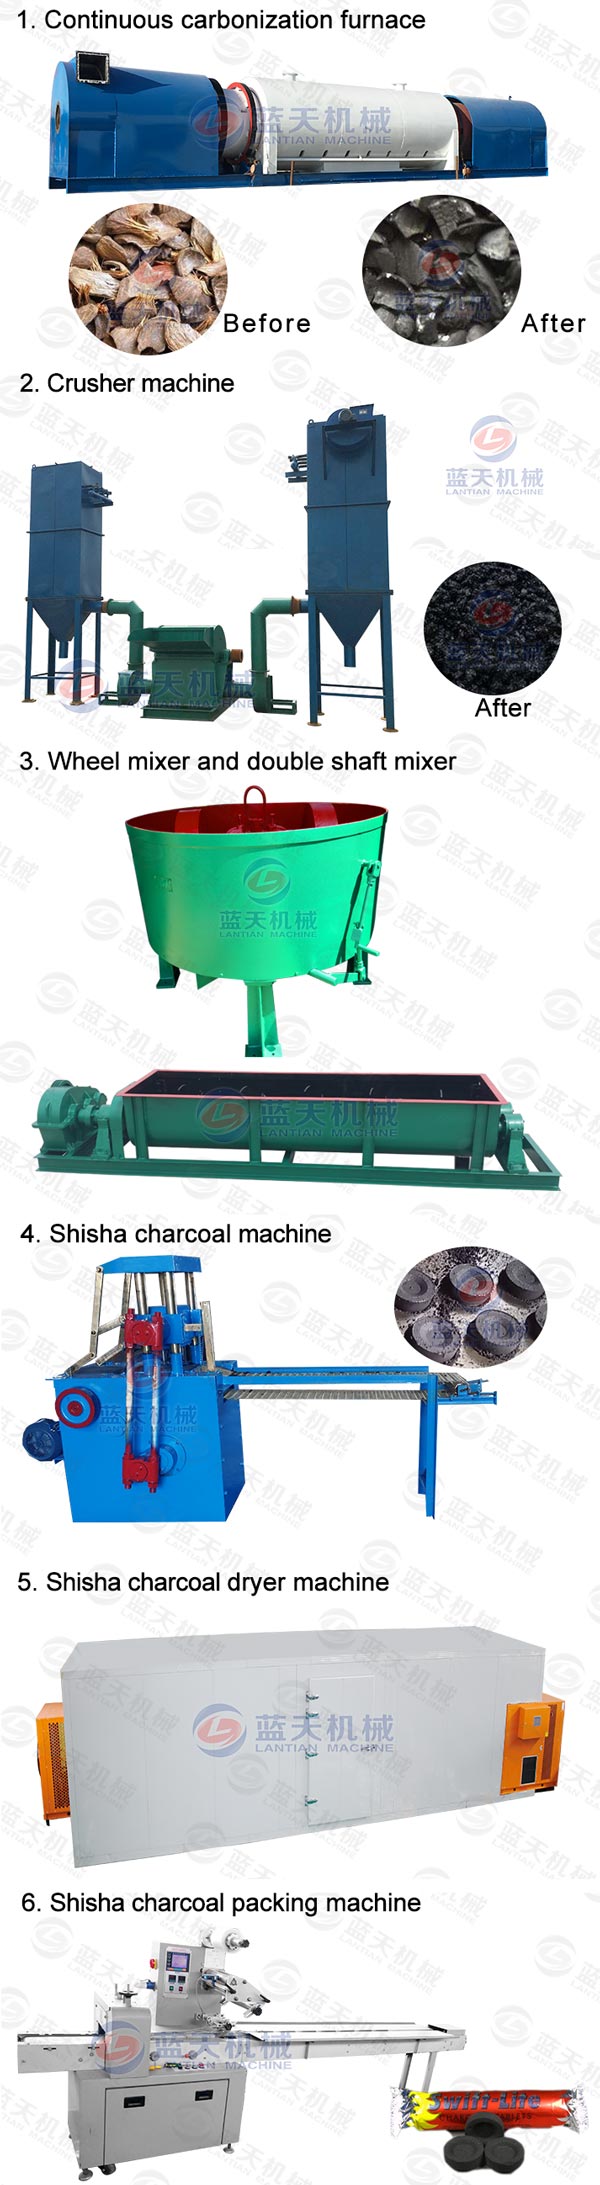 shisha charcoal machine